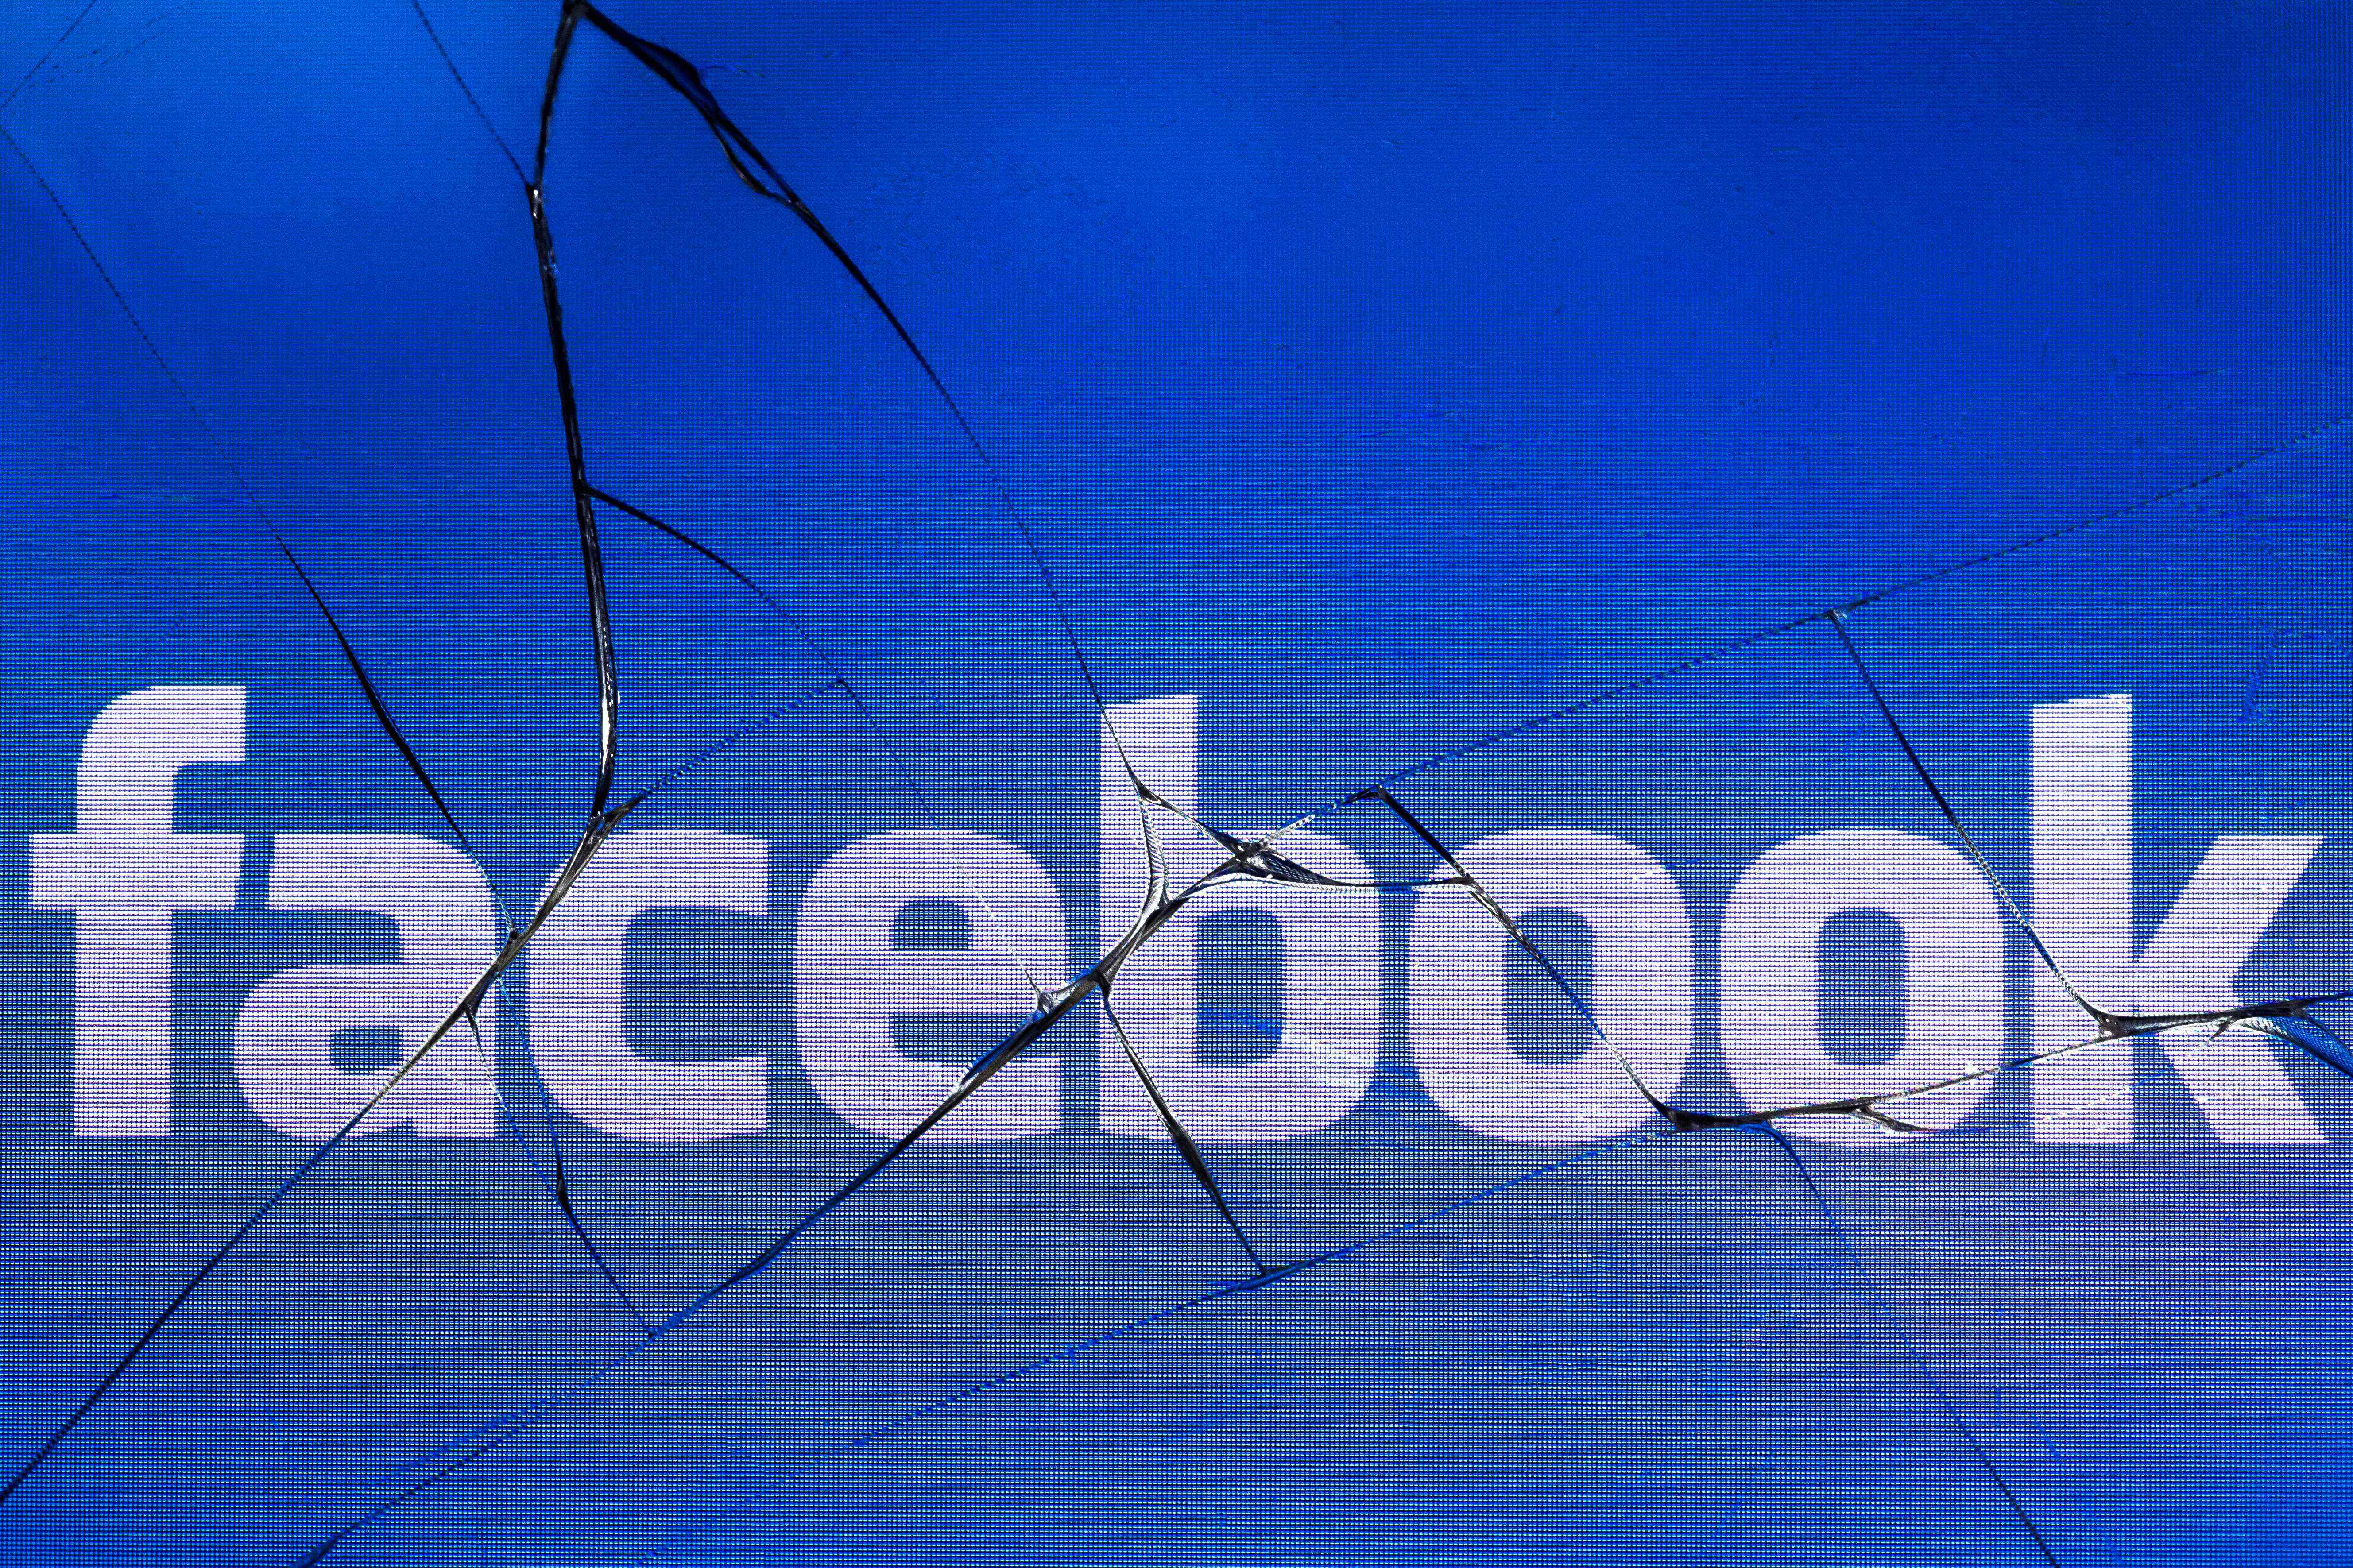 El supremacismo blanco no tendrá cabida en Facebook, anunció la red social. (Foto Prensa Libre: AFP)